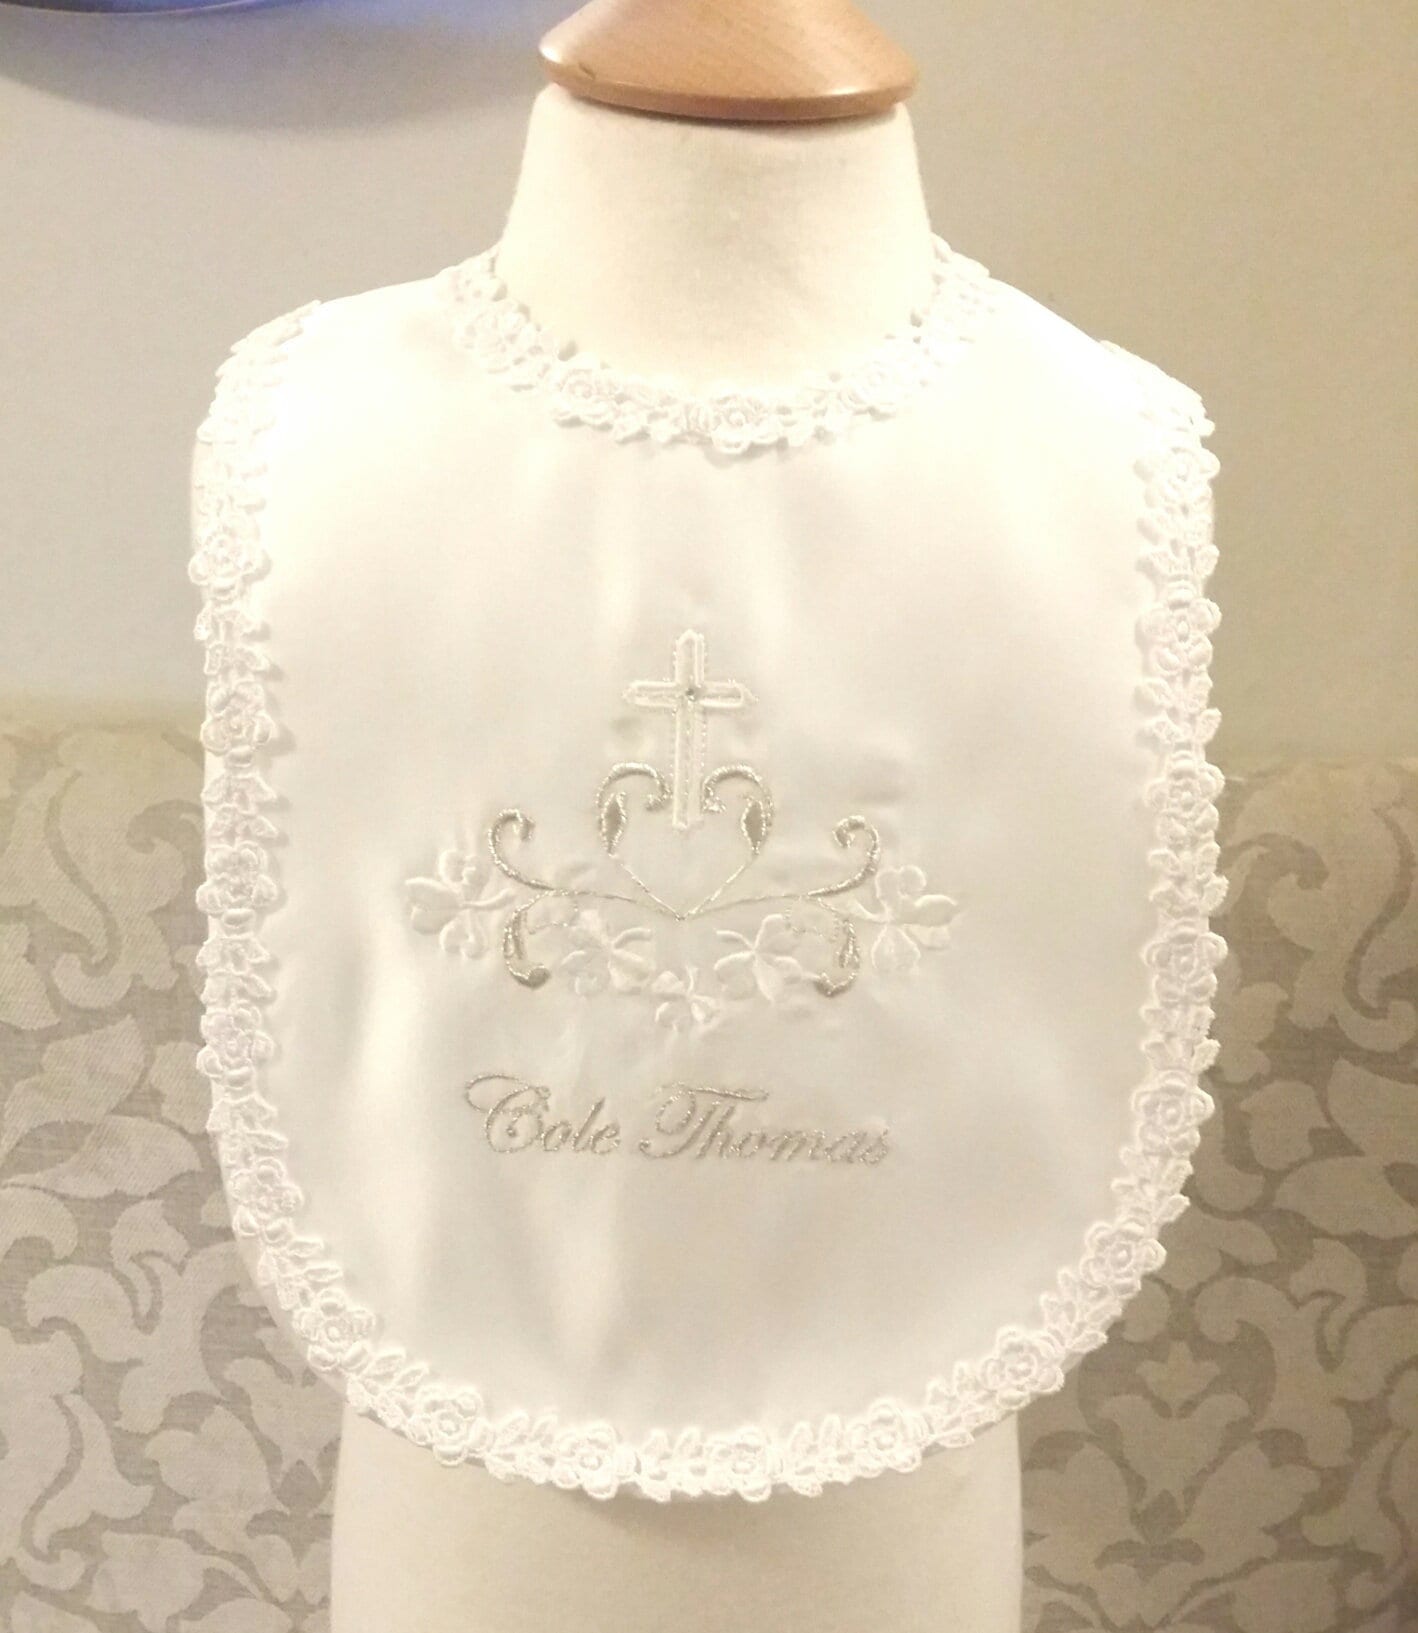 Weiß Creme Oder Elfenbein Baby Taufe Lätzchen Personalisiert Mit Namen Verziert Kreuz Design Shamrock Katholisch von Etsy - LyuboveChristenings